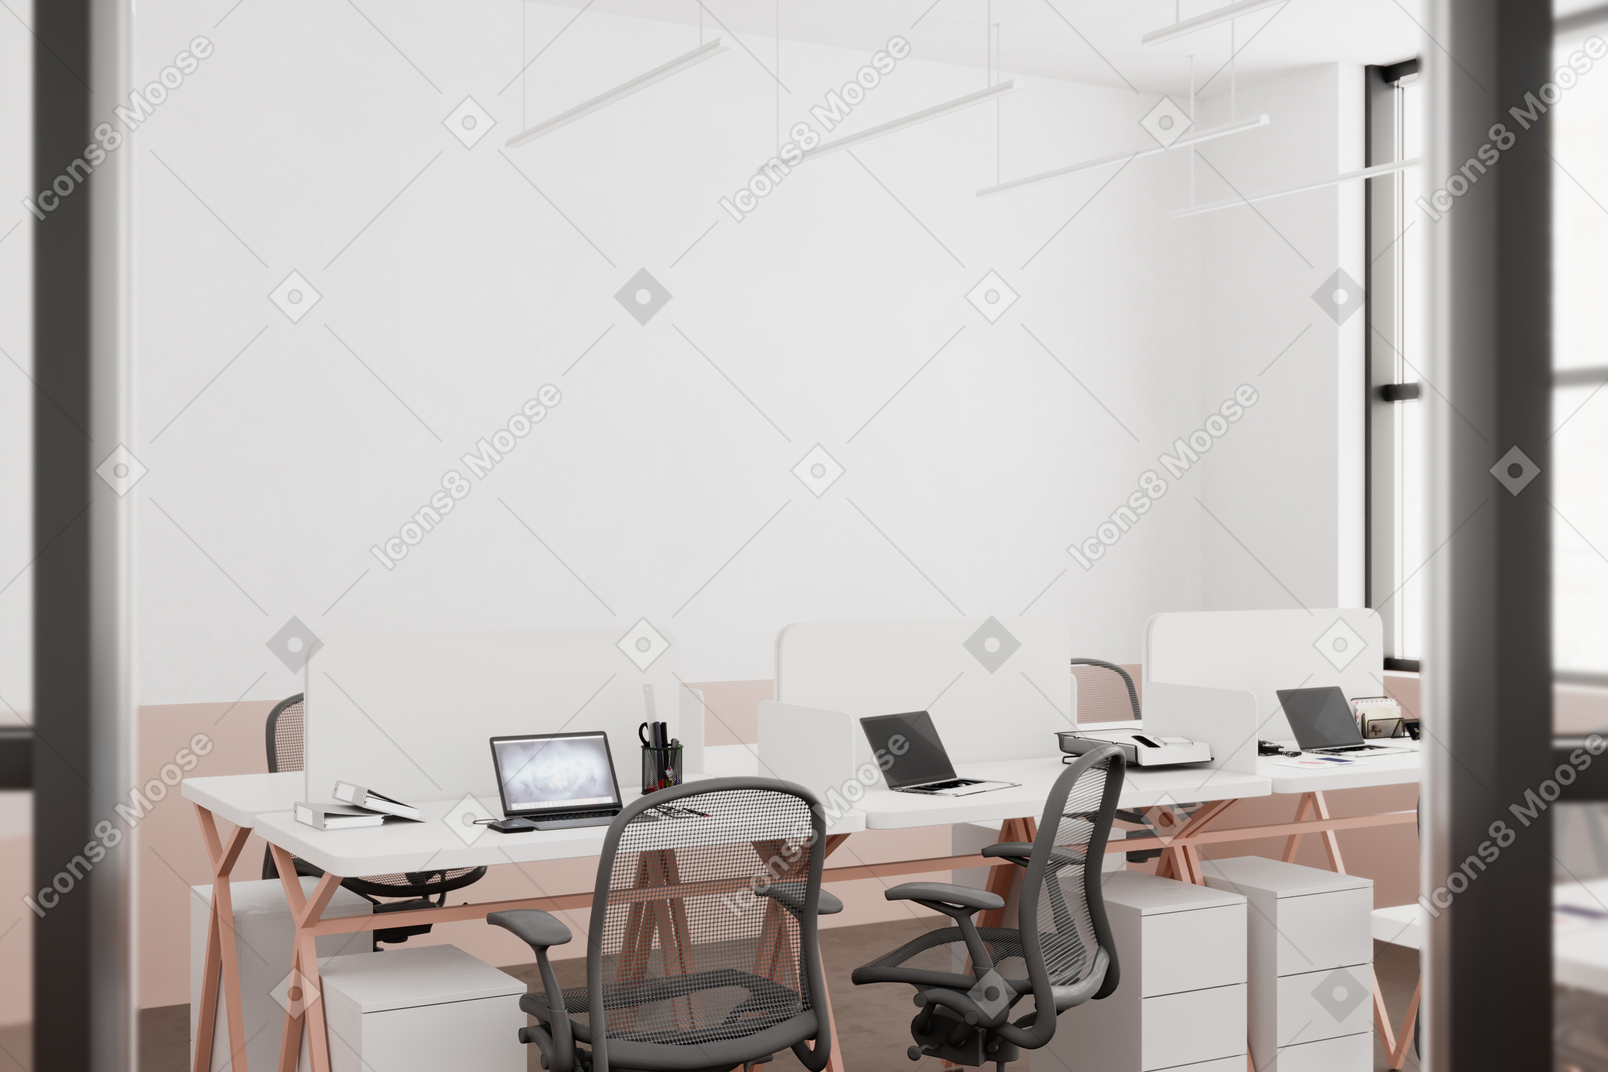 Schreibtische, stühle und laptops in einem büro